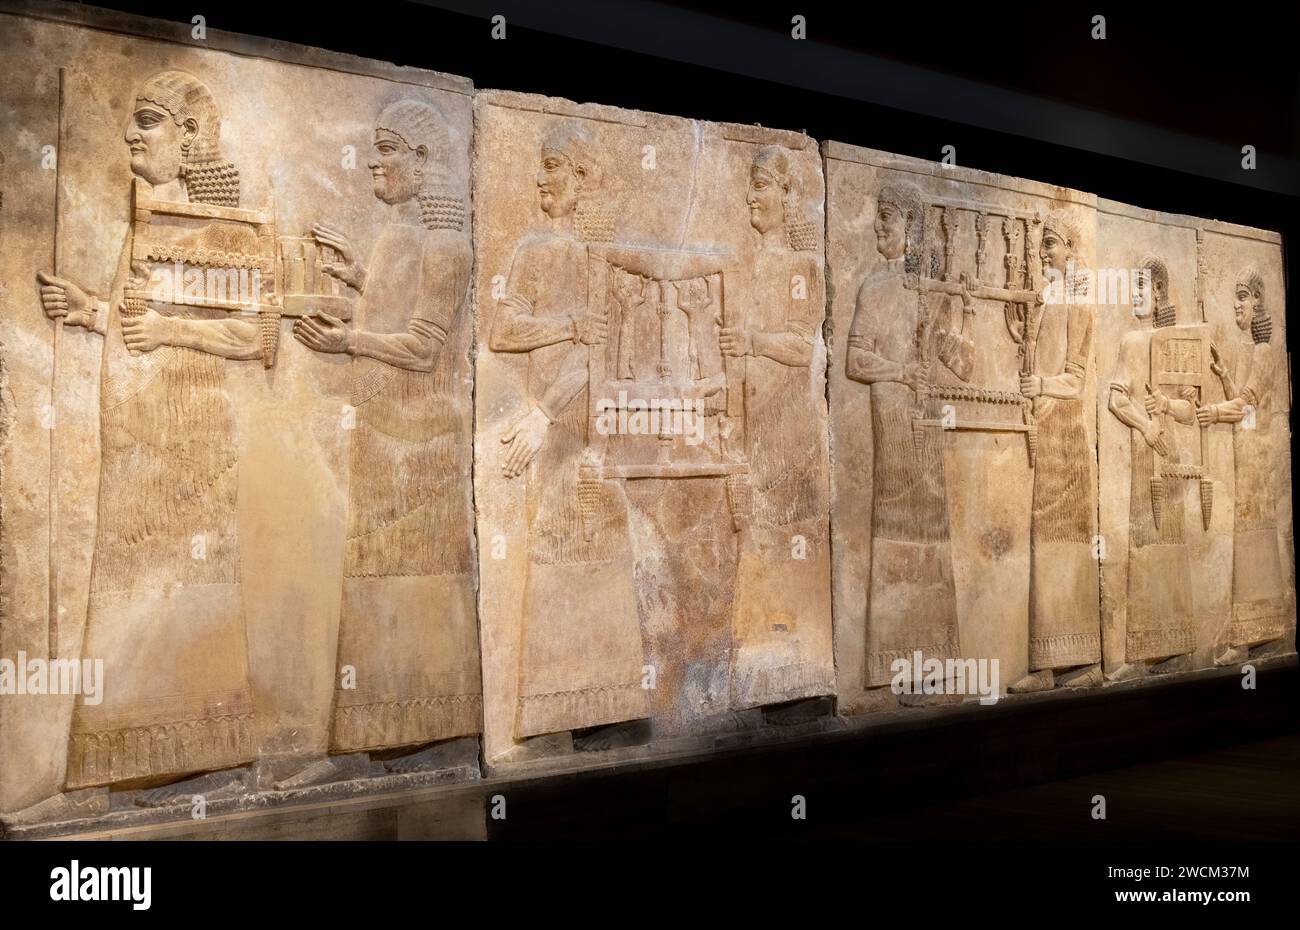 Relief en pierre sculptée de serviteurs portant des chaises, palais assyrien de dur-Sharrukin, Khorsabad, Irak, maintenant dans le musée de l'Irak, Bagdad, Irak Banque D'Images